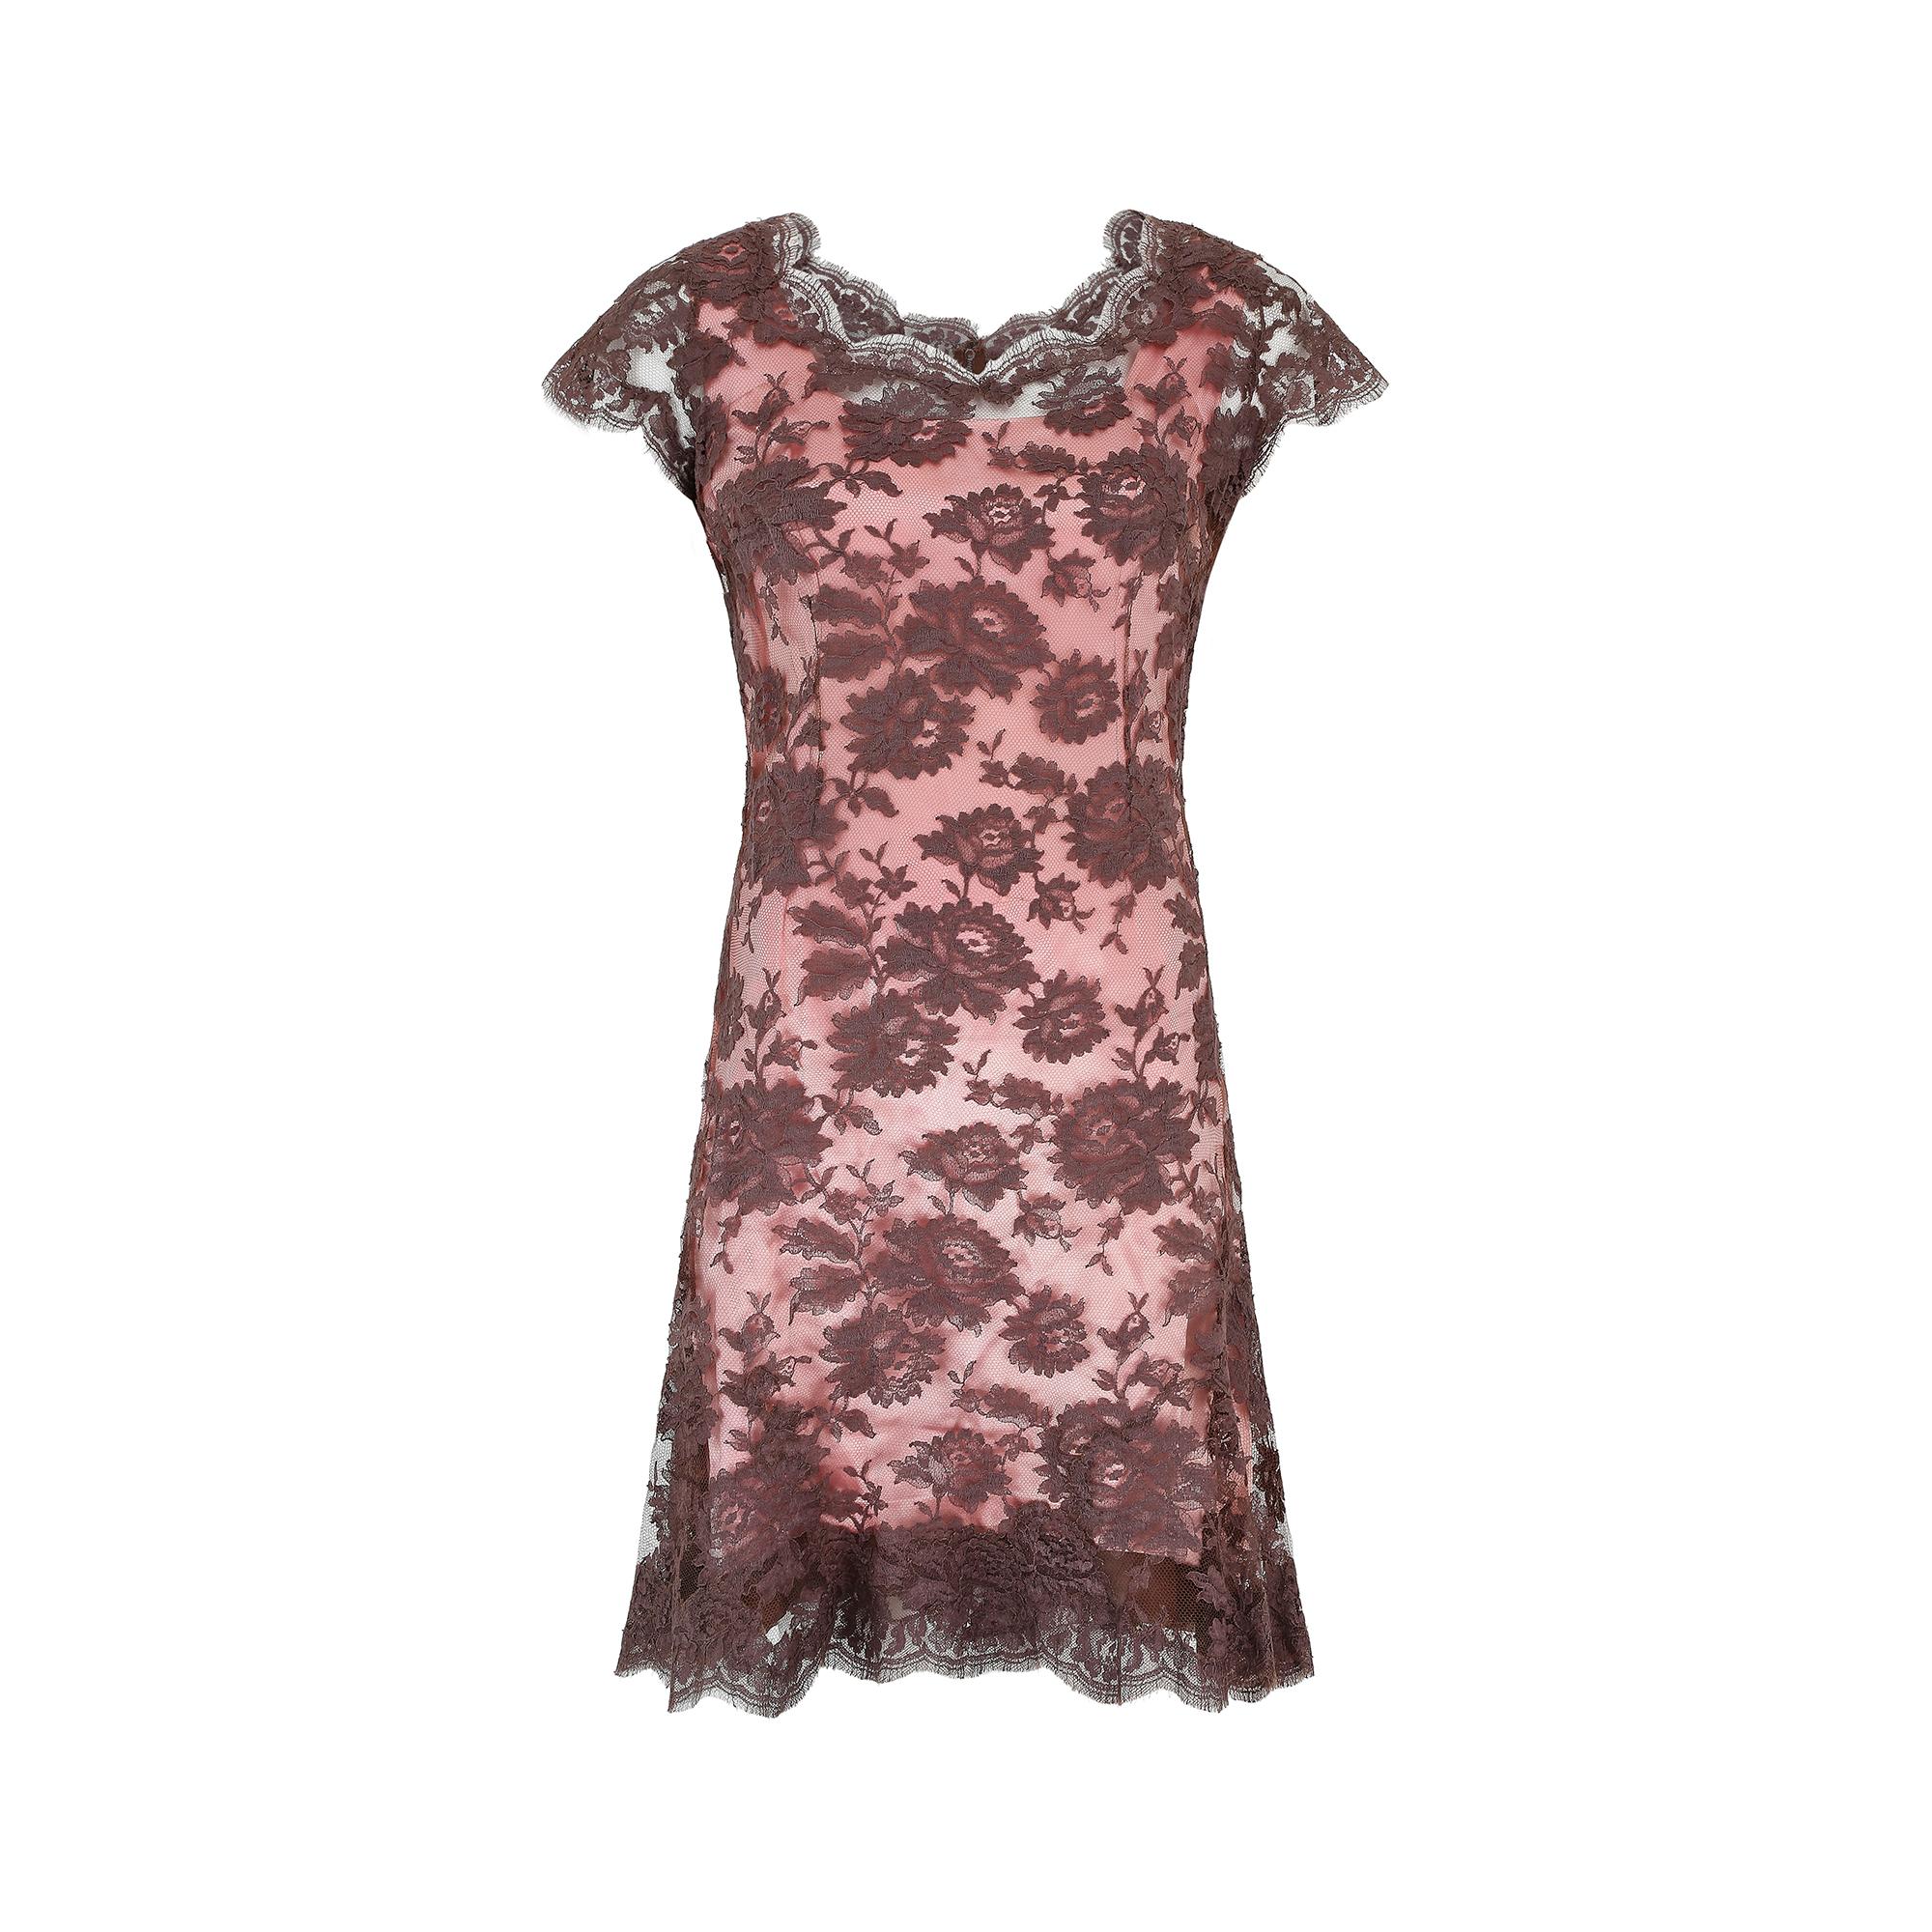 Superbe robe fourreau couture des années 1950 de Worth London, dans une combinaison saisissante de satin de soie rose pâle et de dentelle brune. La sous-couche est conçue dans une luxueuse soie rose douce avec des bordures en mousseline de soie brun